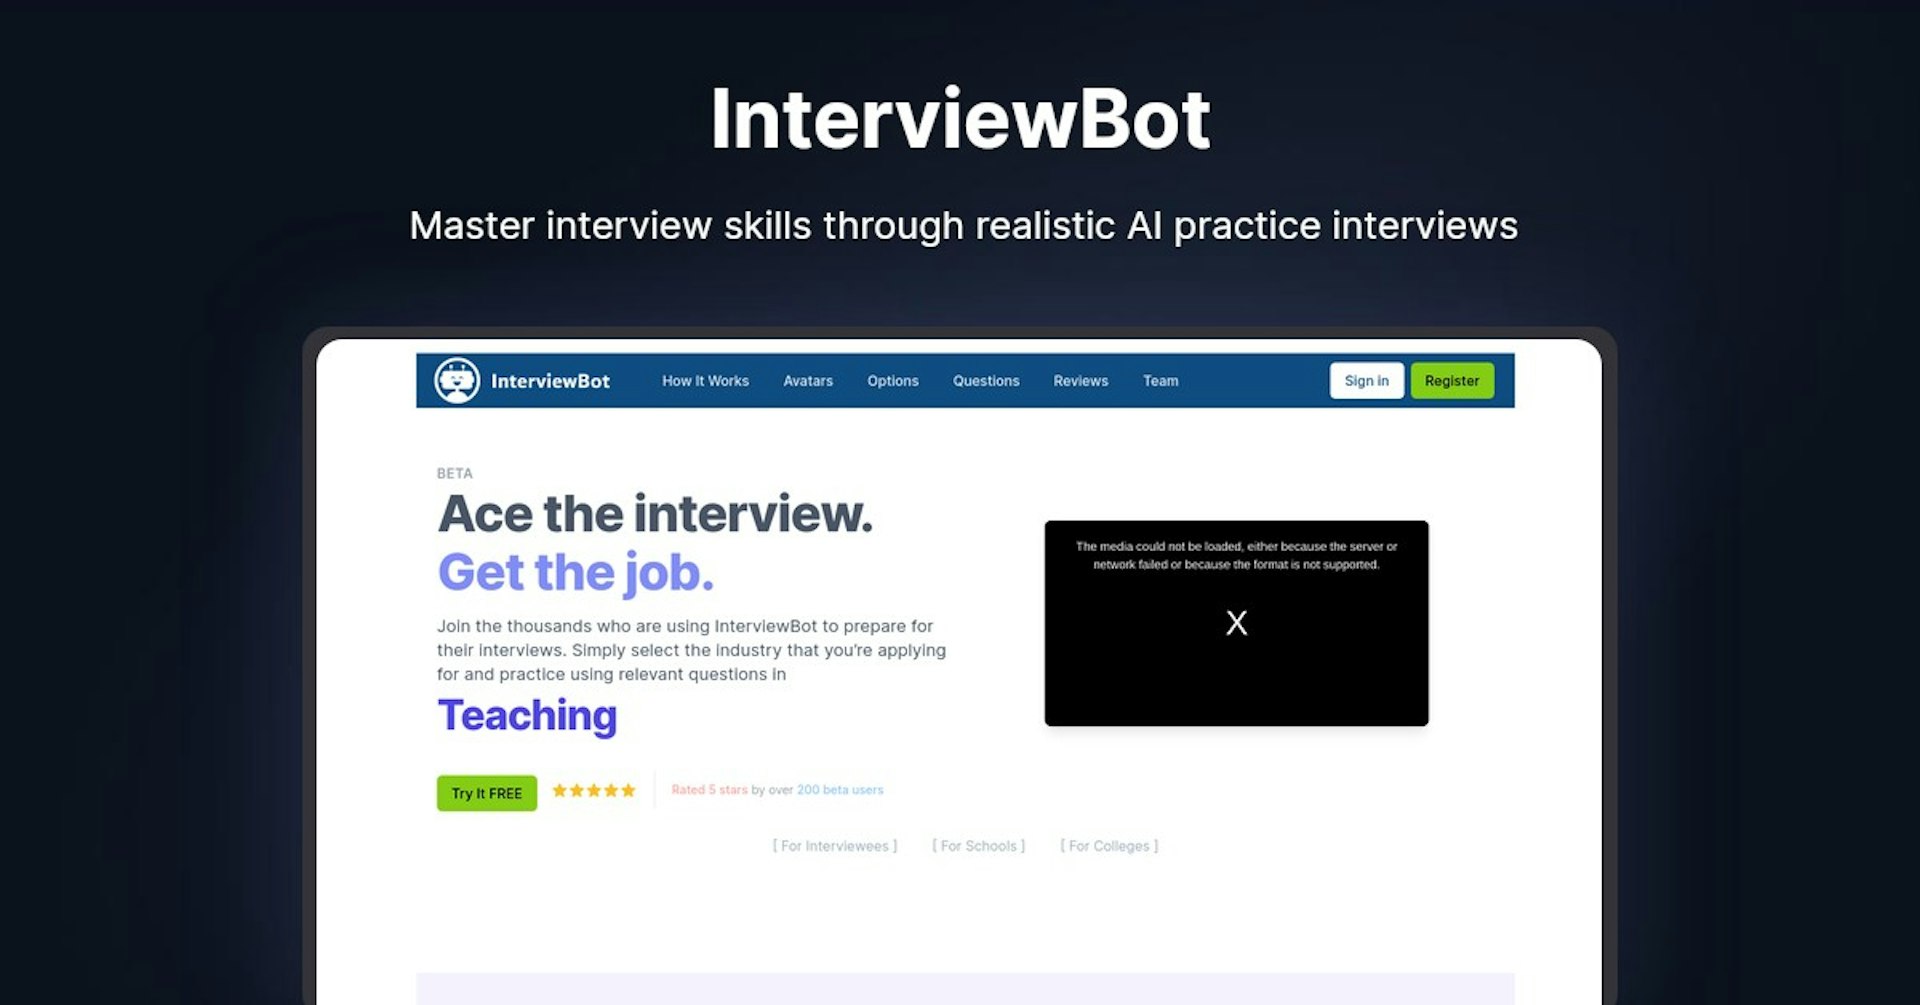 InterviewBot